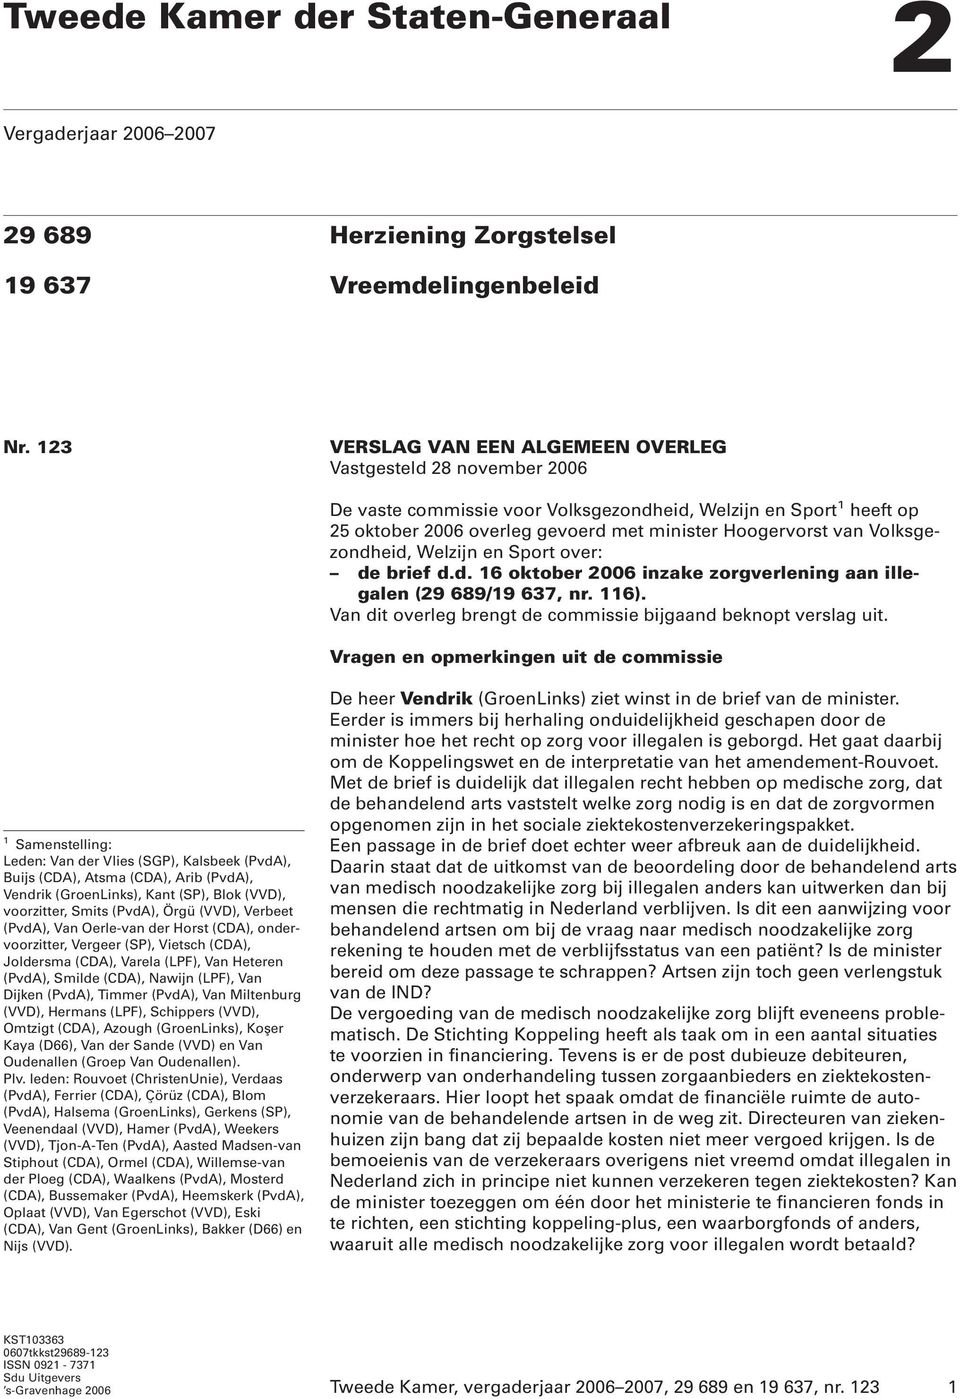 Volksgezondheid, Welzijn en Sport over: de brief d.d. 16 oktober 2006 inzake zorgverlening aan illegalen (29 689/19 637, nr. 116). Van dit overleg brengt de commissie bijgaand beknopt verslag uit.